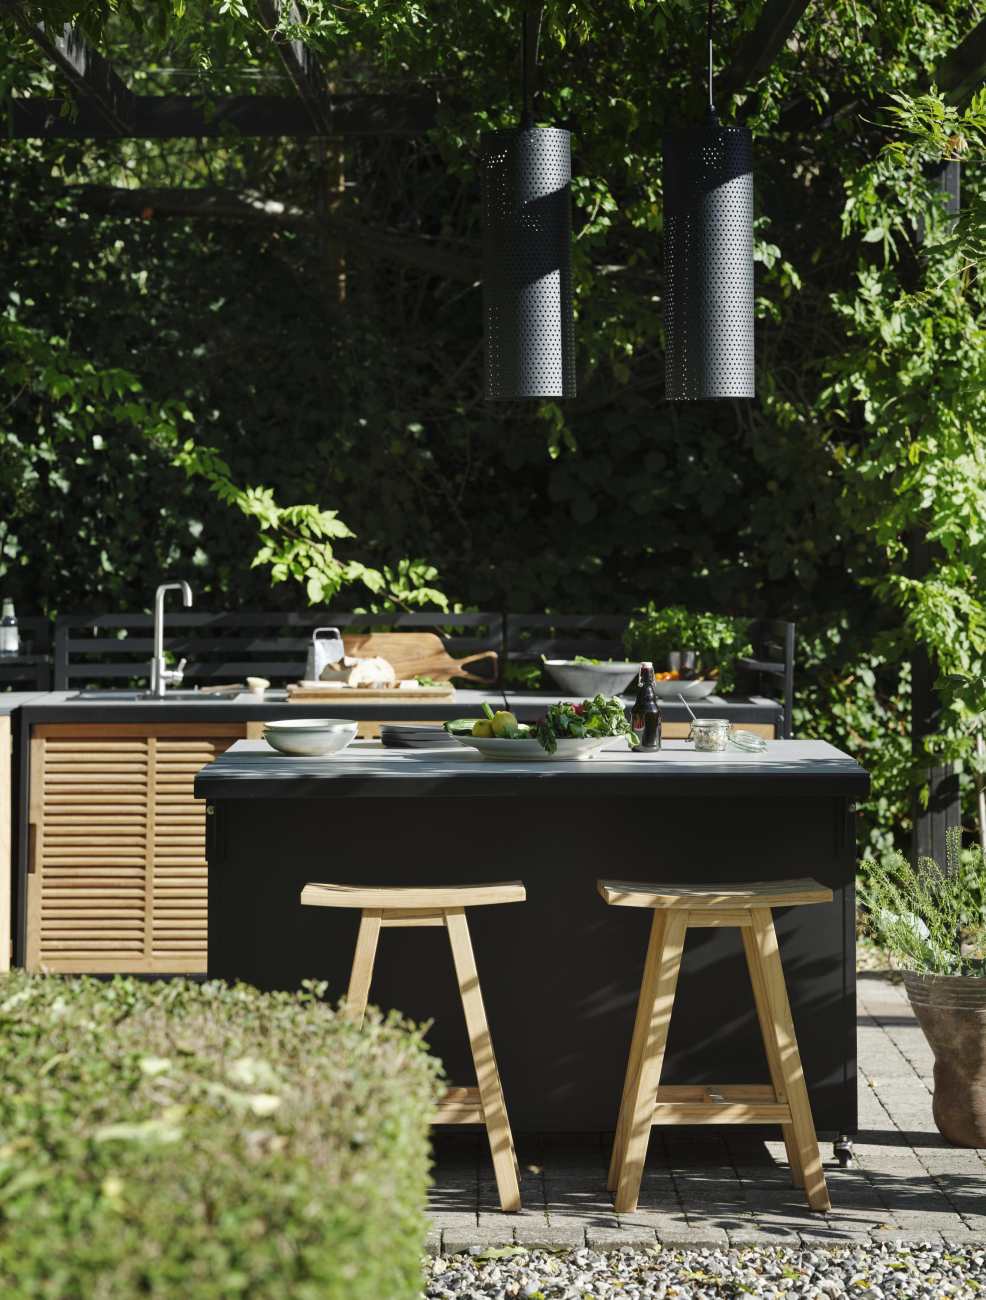 Die Gartenküche Fornax überzeugt mit ihrem modernen Design. Gefertigt wurde sie aus Teakholz, welches einen natürlichen Farbton besitzt. Das Gestell ist aus Aluminium und hat eine schwarze Farbe. Das Regal-Element verfügt über ein Größe von 139x30 cm, wel